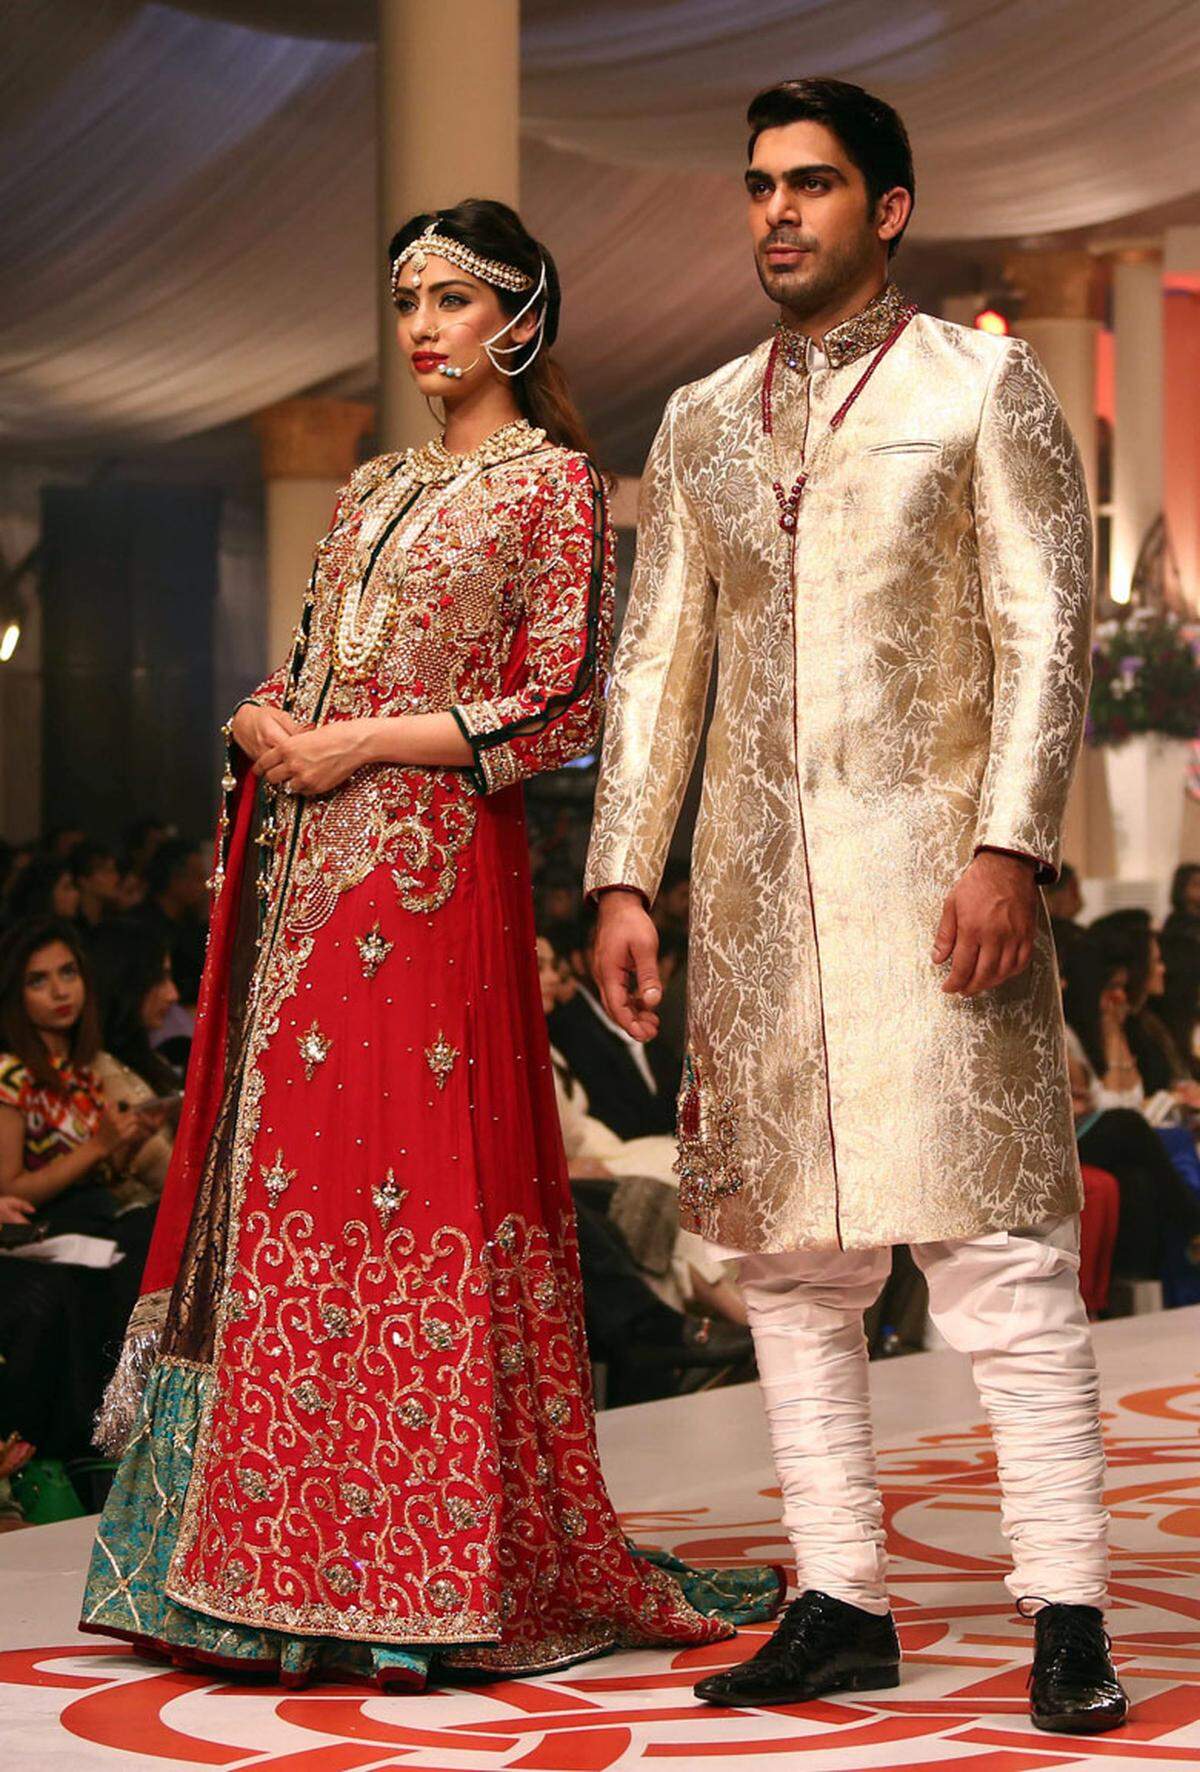 Sehen und gesehen werden. Pakistanische Brautkleider sind selten Weiß, dafür stechen sie mit üppigen Verzierungen, viel Gold und sattem Rot ins Auge.